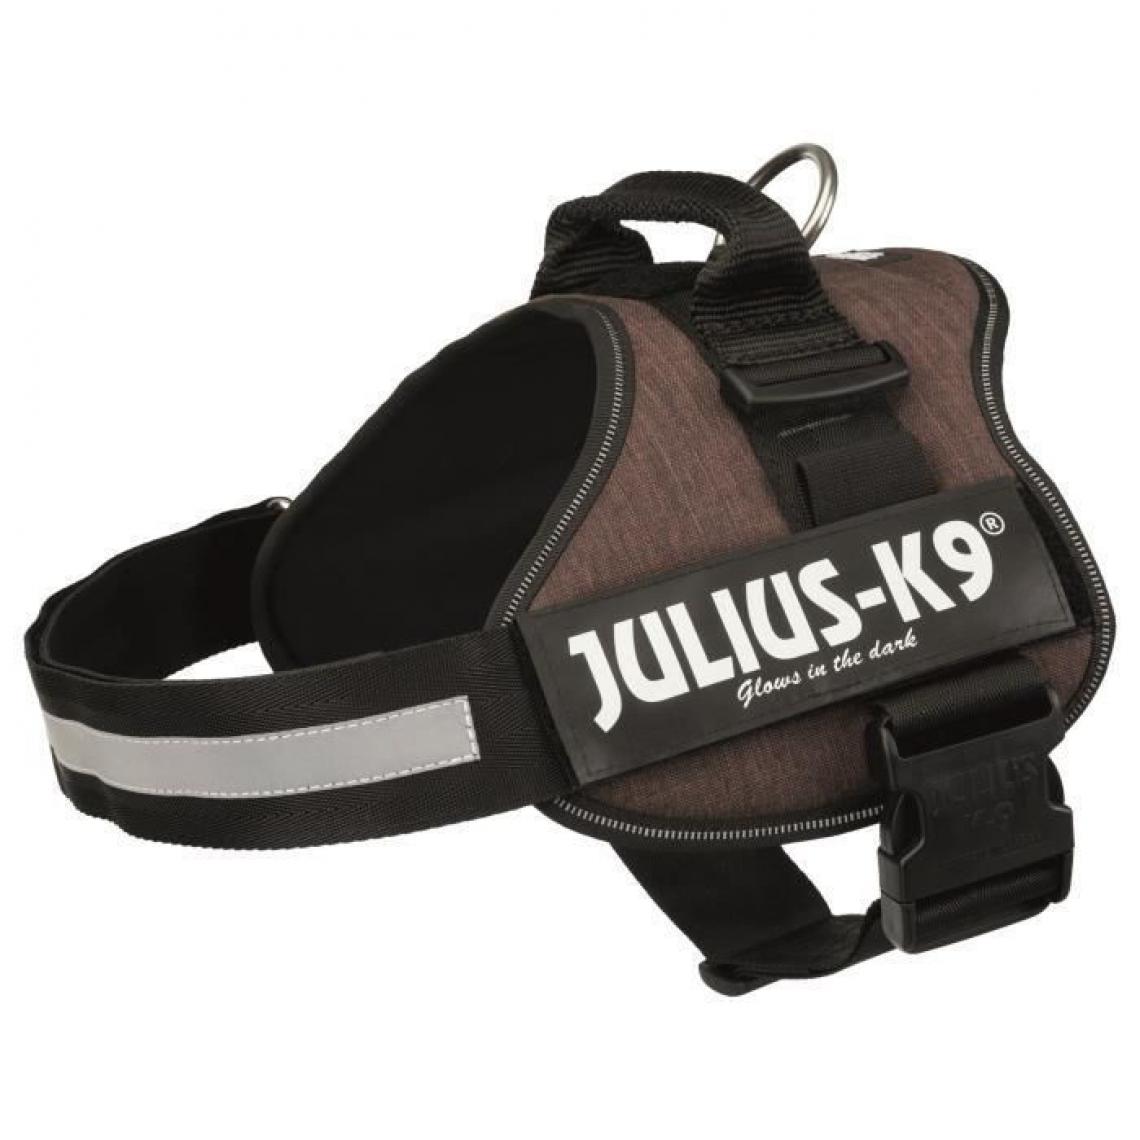 Julius K9 - JULIUS K9 Harnais Power 1-L : 66-85 cm - 50 mm - Moka - Pour chien - Equipement de transport pour chien